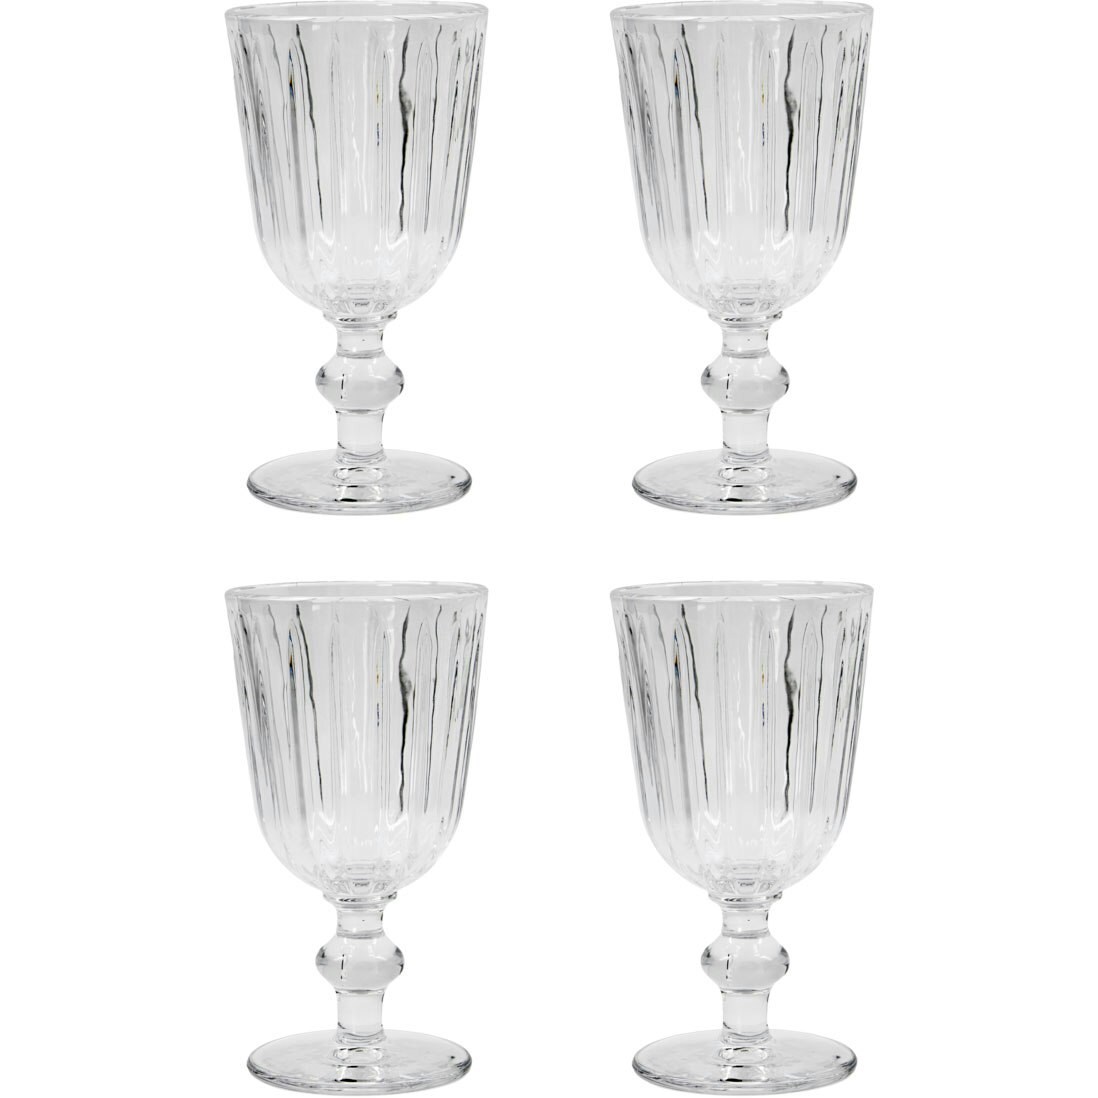 vinglas du kan købe online Glas porcelæn